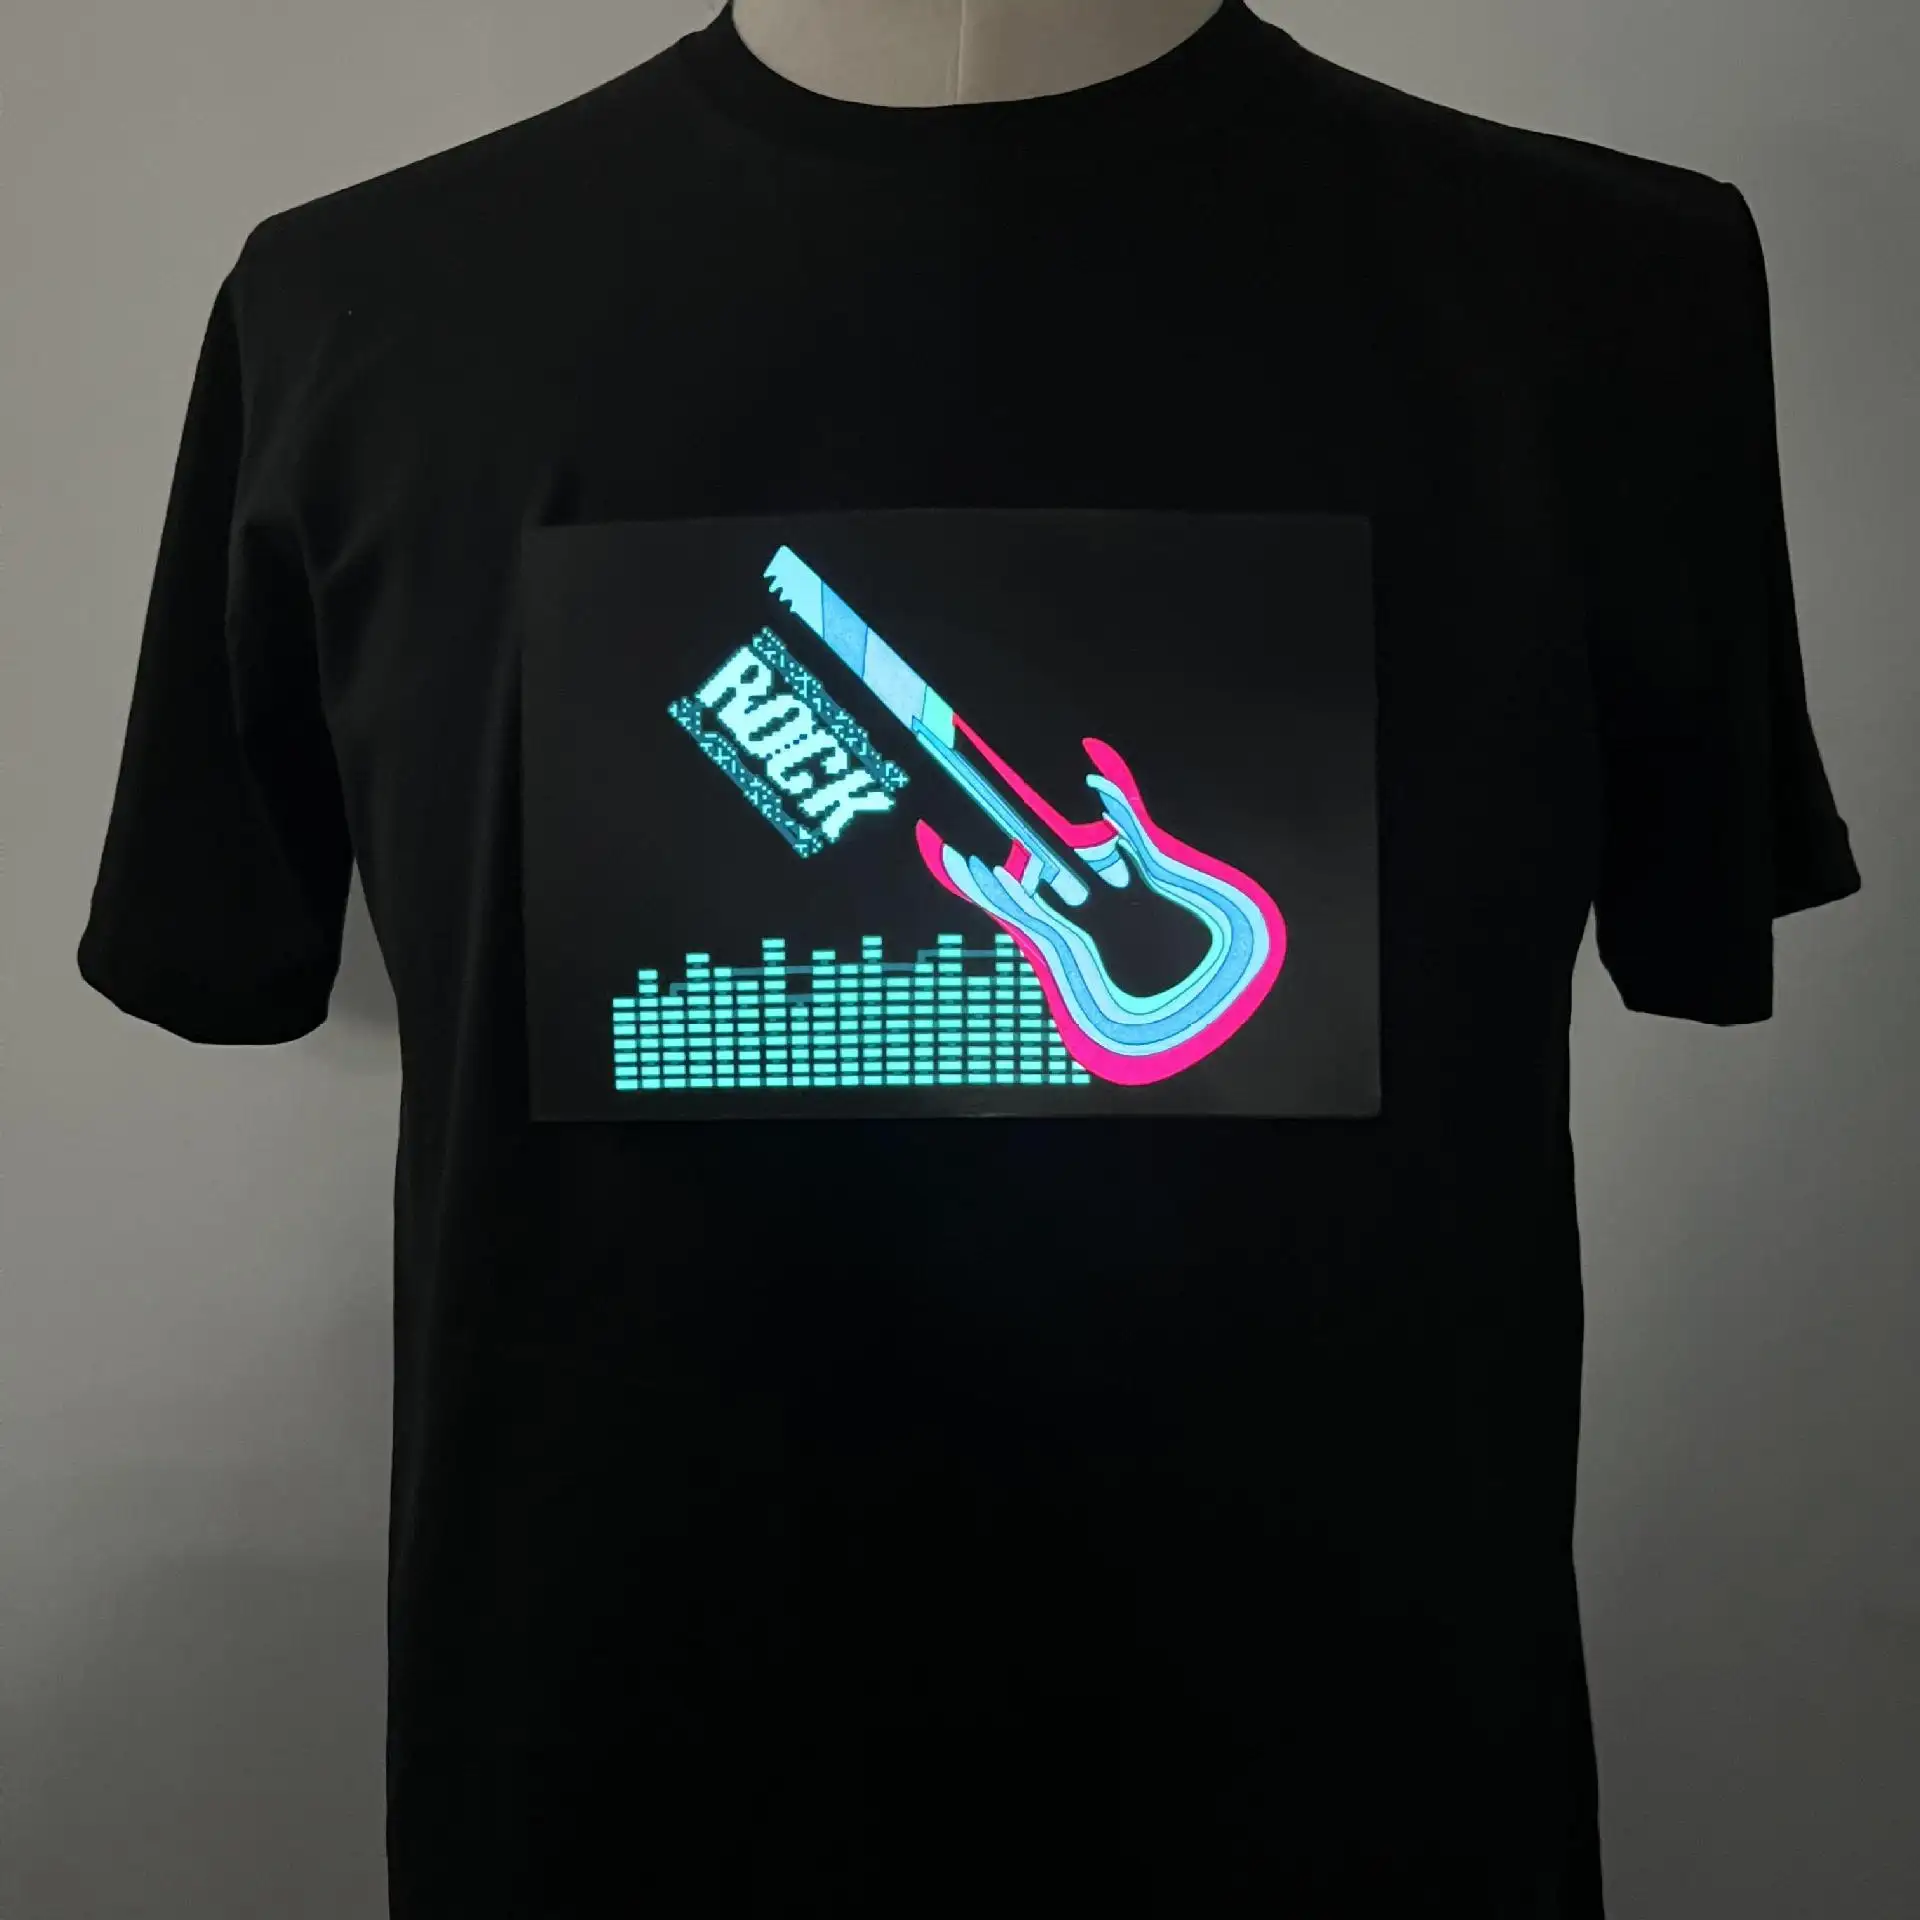 Pesta karnaval kustom cahaya suara Equalizer aktif kaus El Equalizer berkedip musik diaktifkan T-Shirt Led